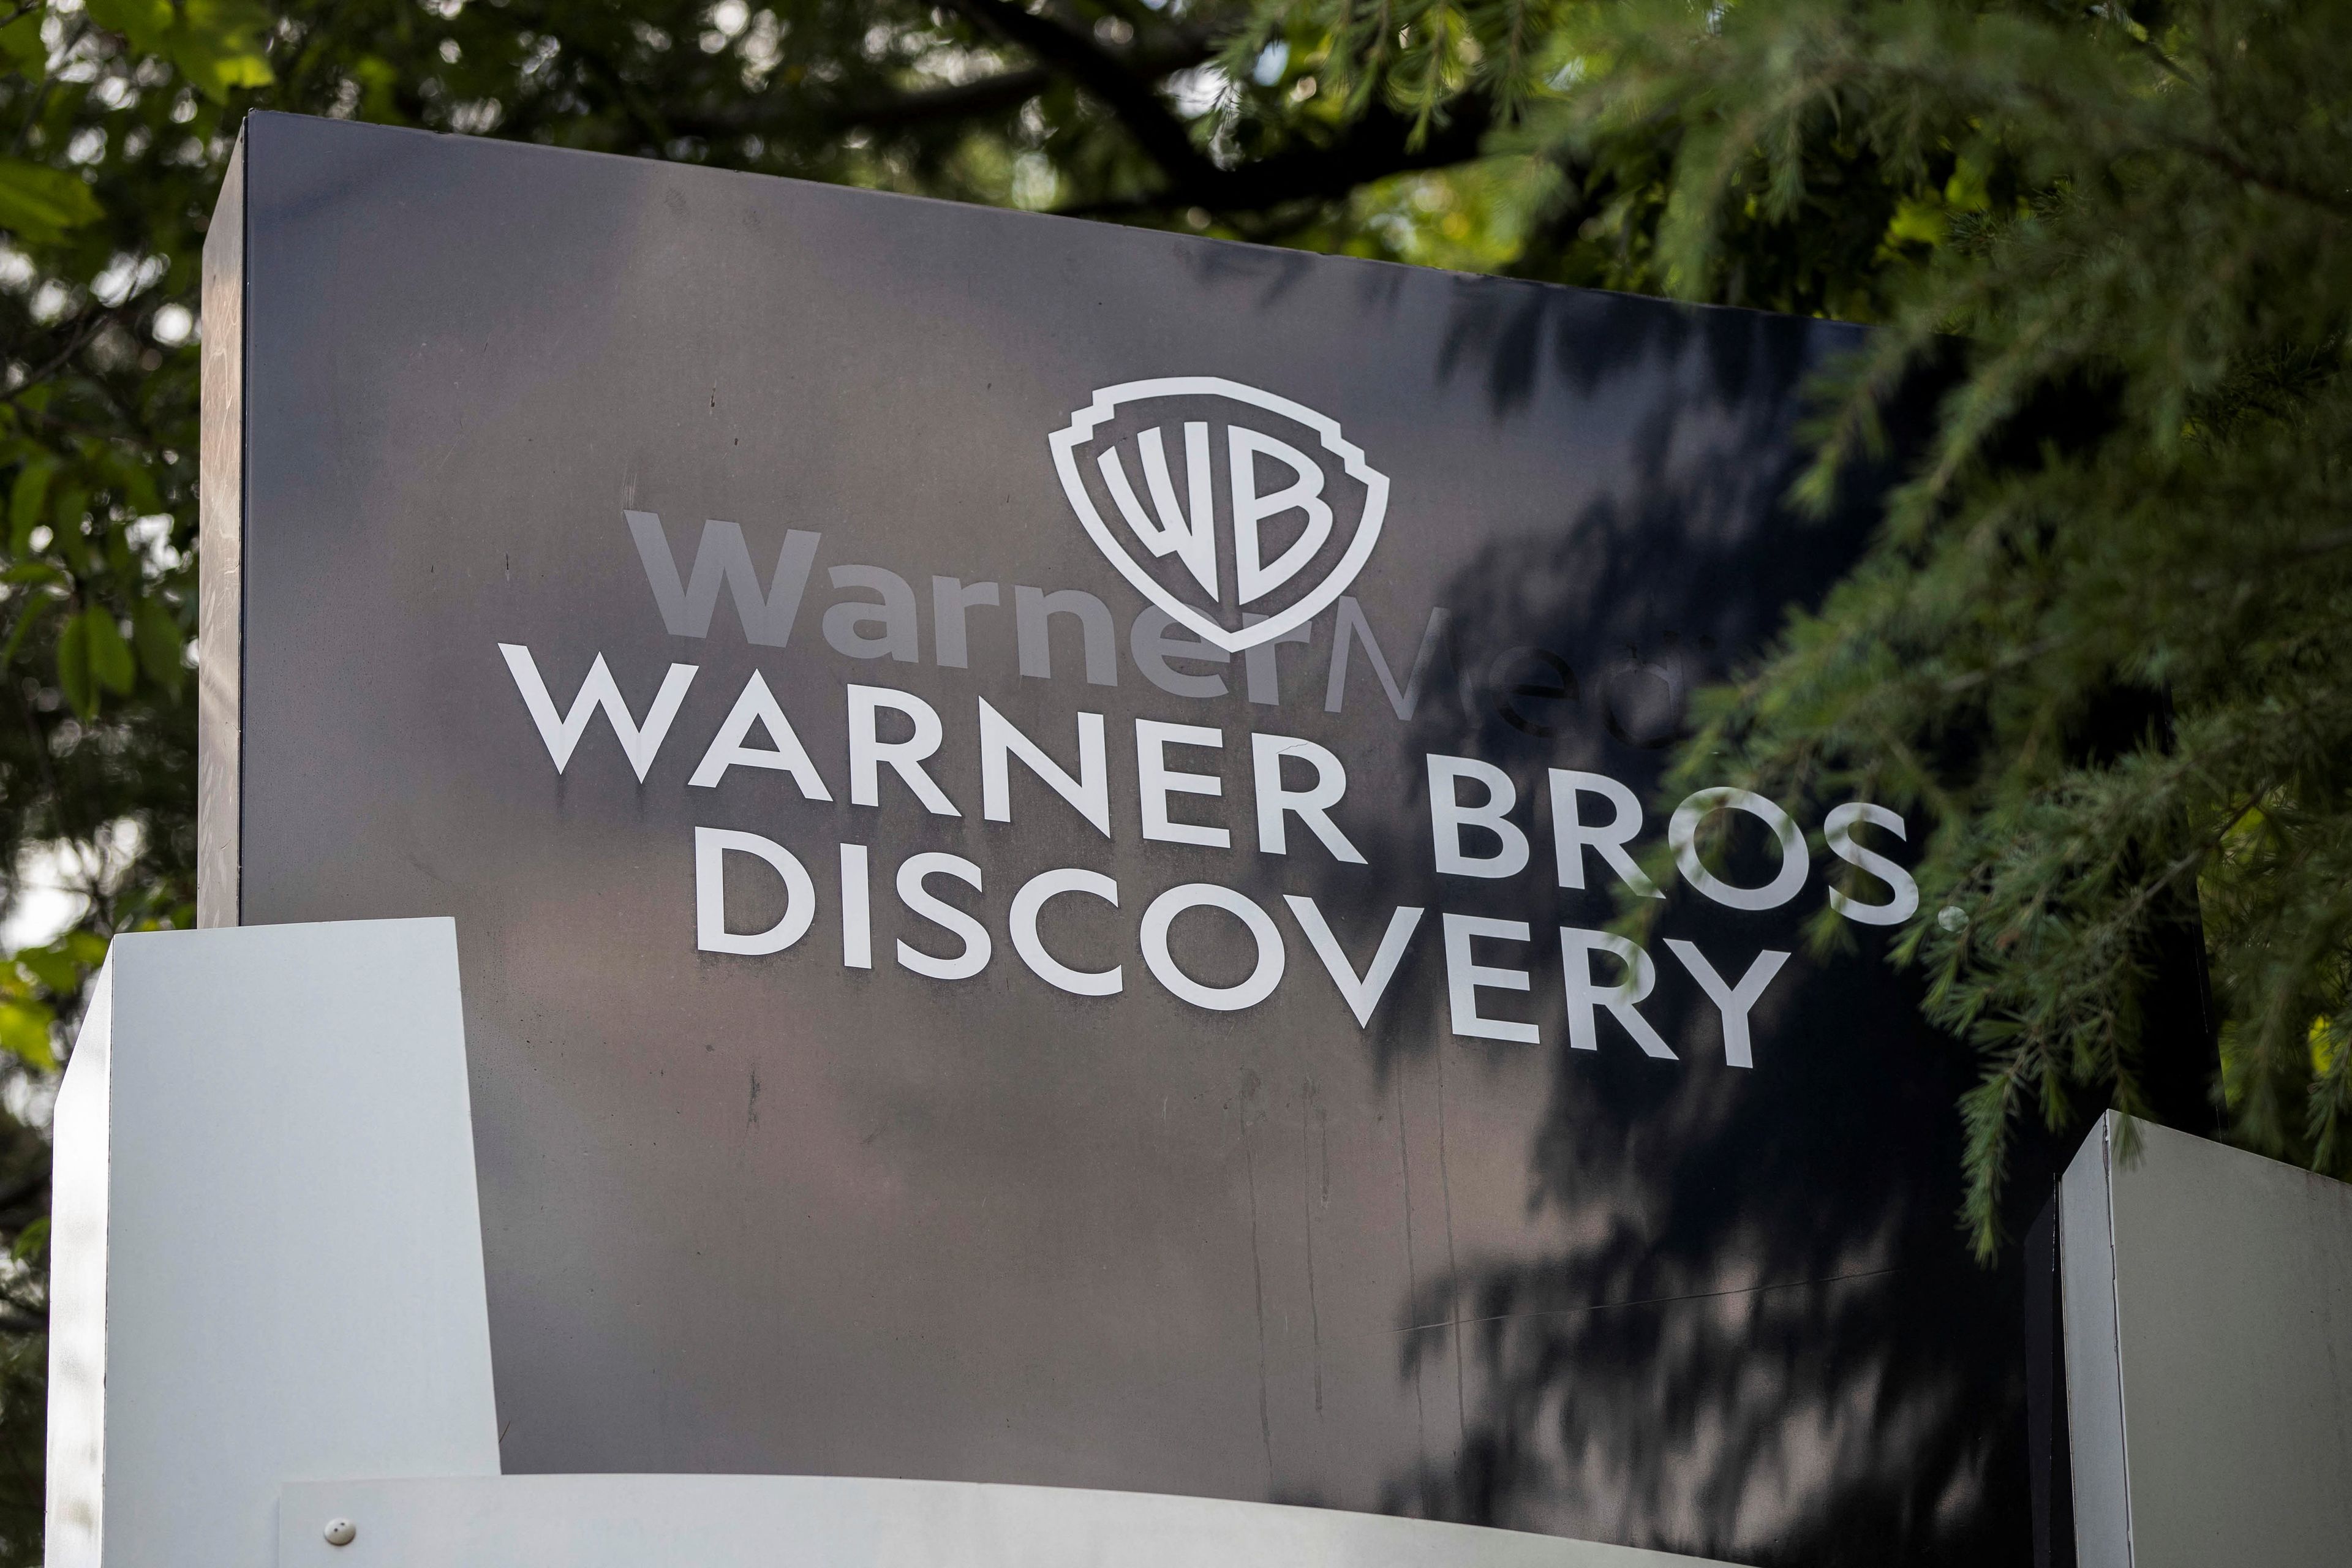 Logo de Warner Bros Discovery